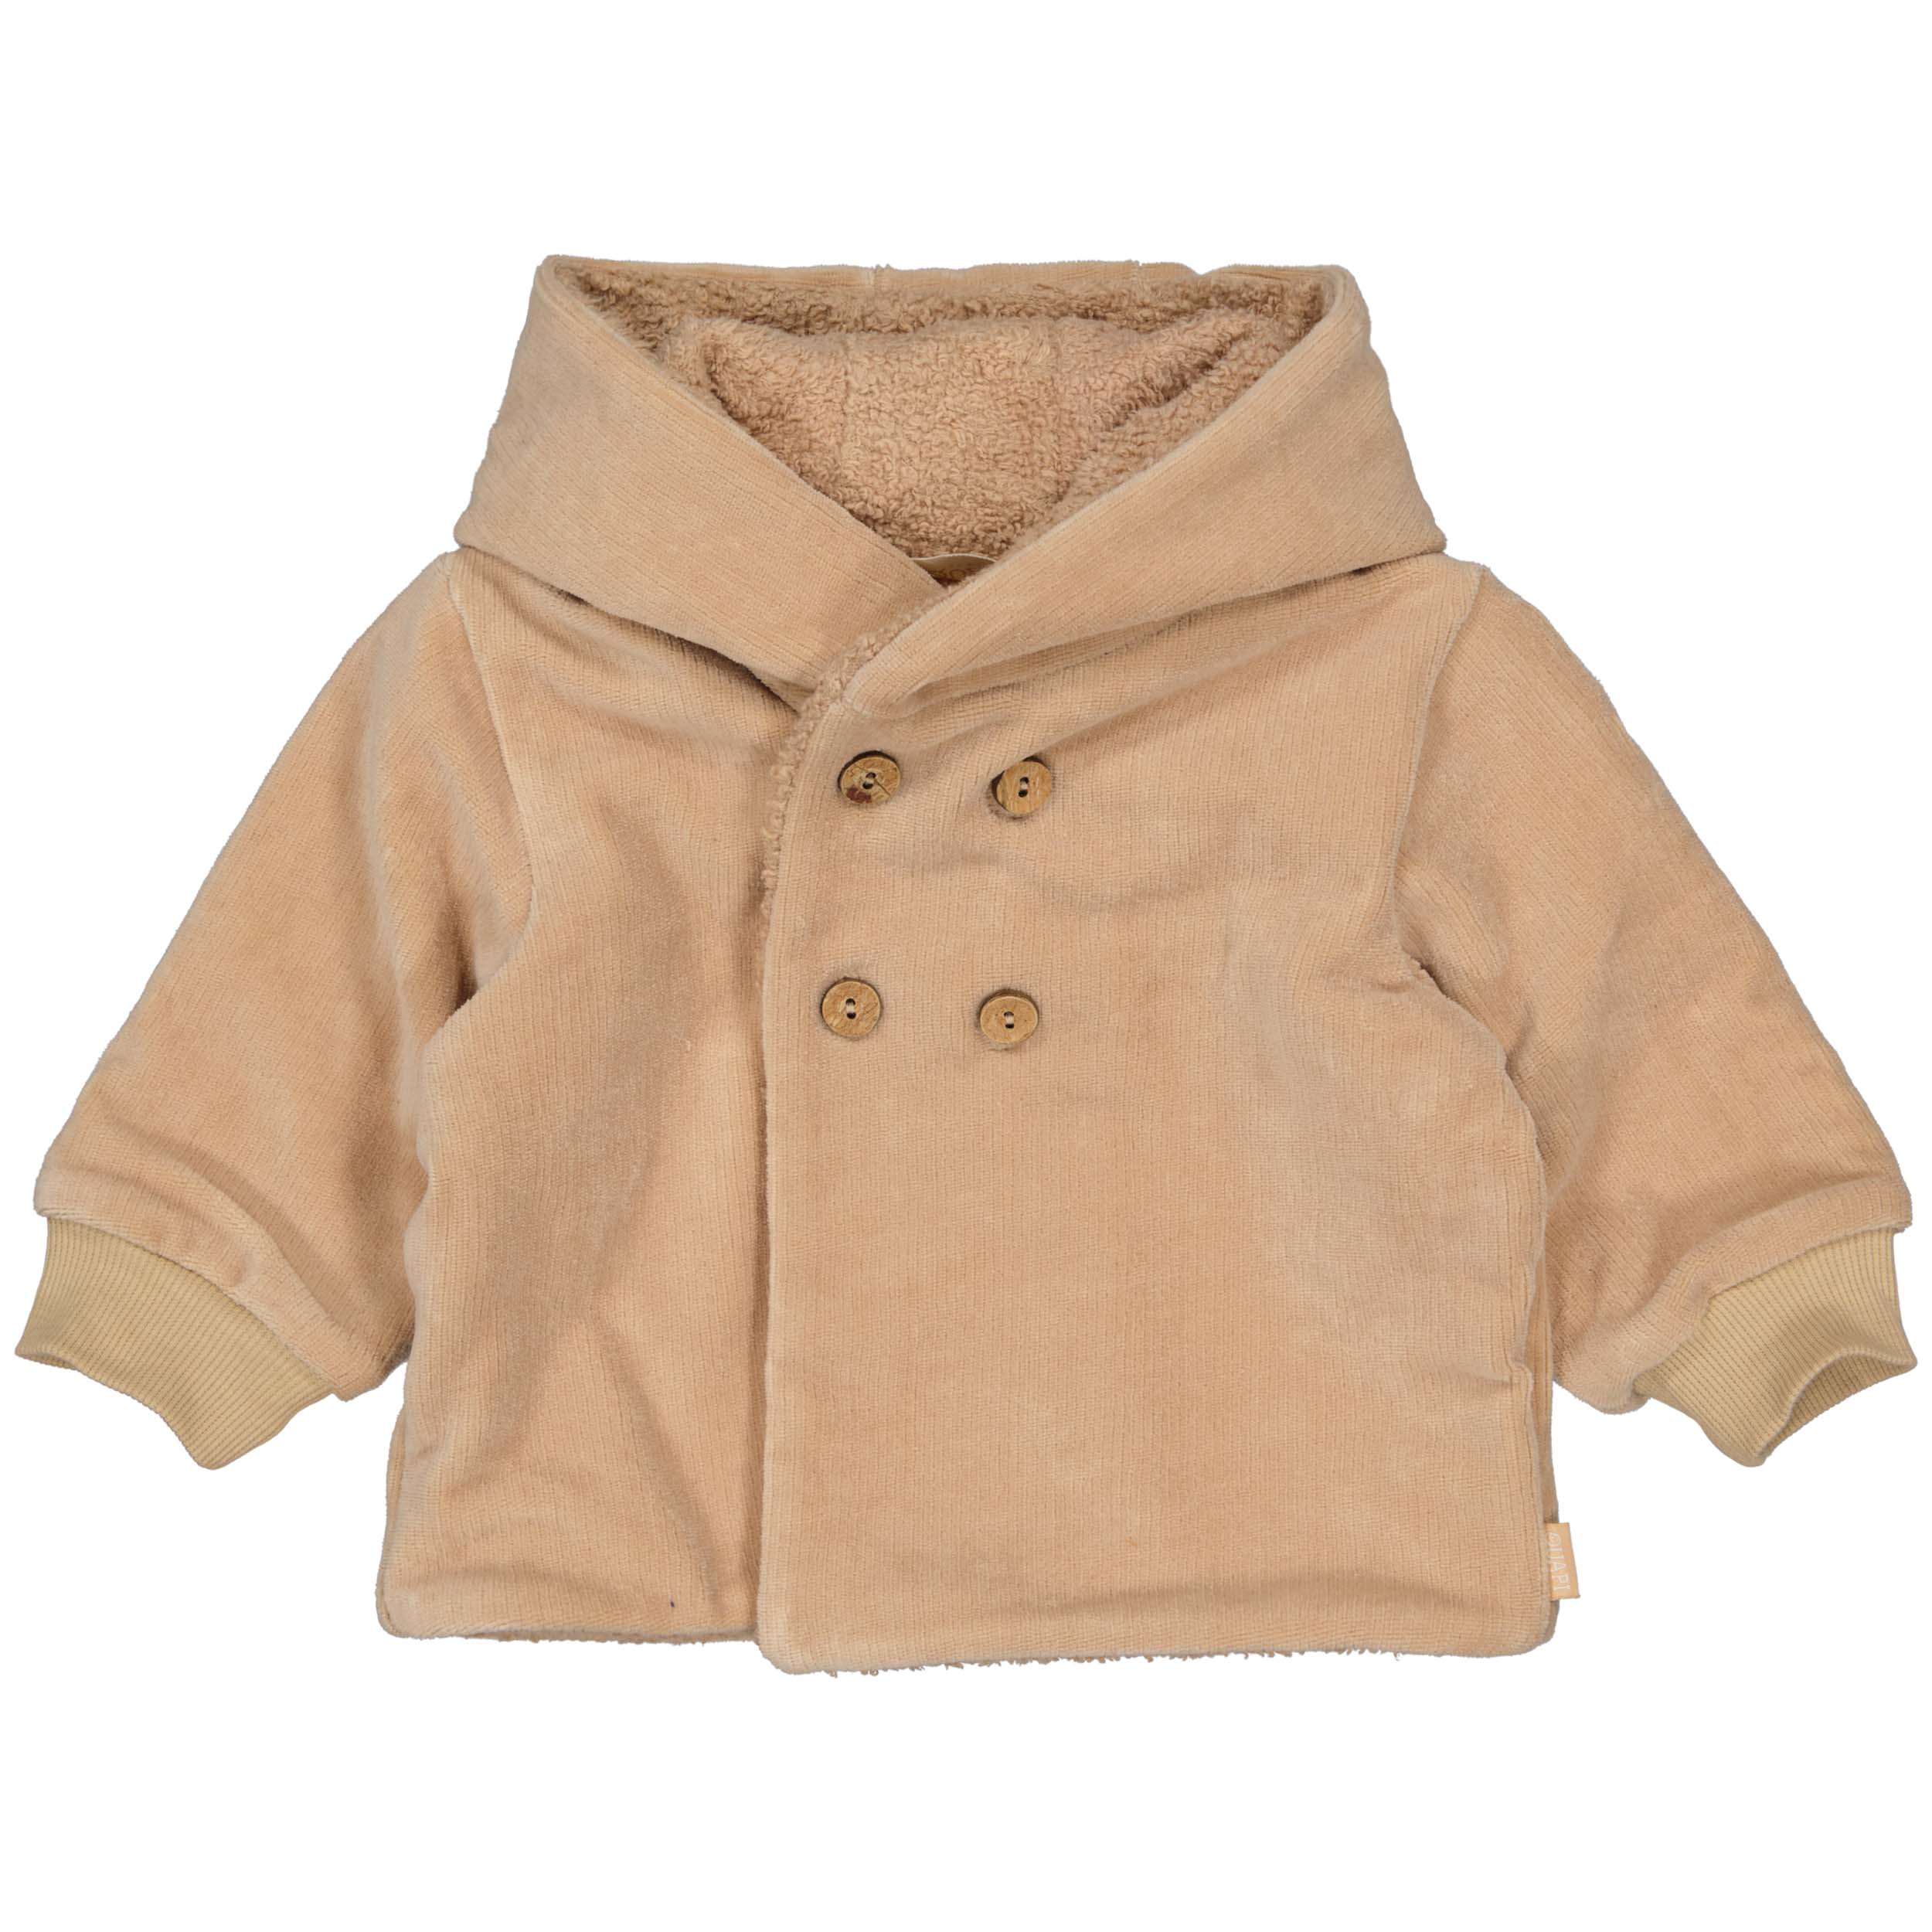 Meisjes Jacket CHARLIQNBW23 van Quapi Newborn in de kleur Camel Soft in maat 68.